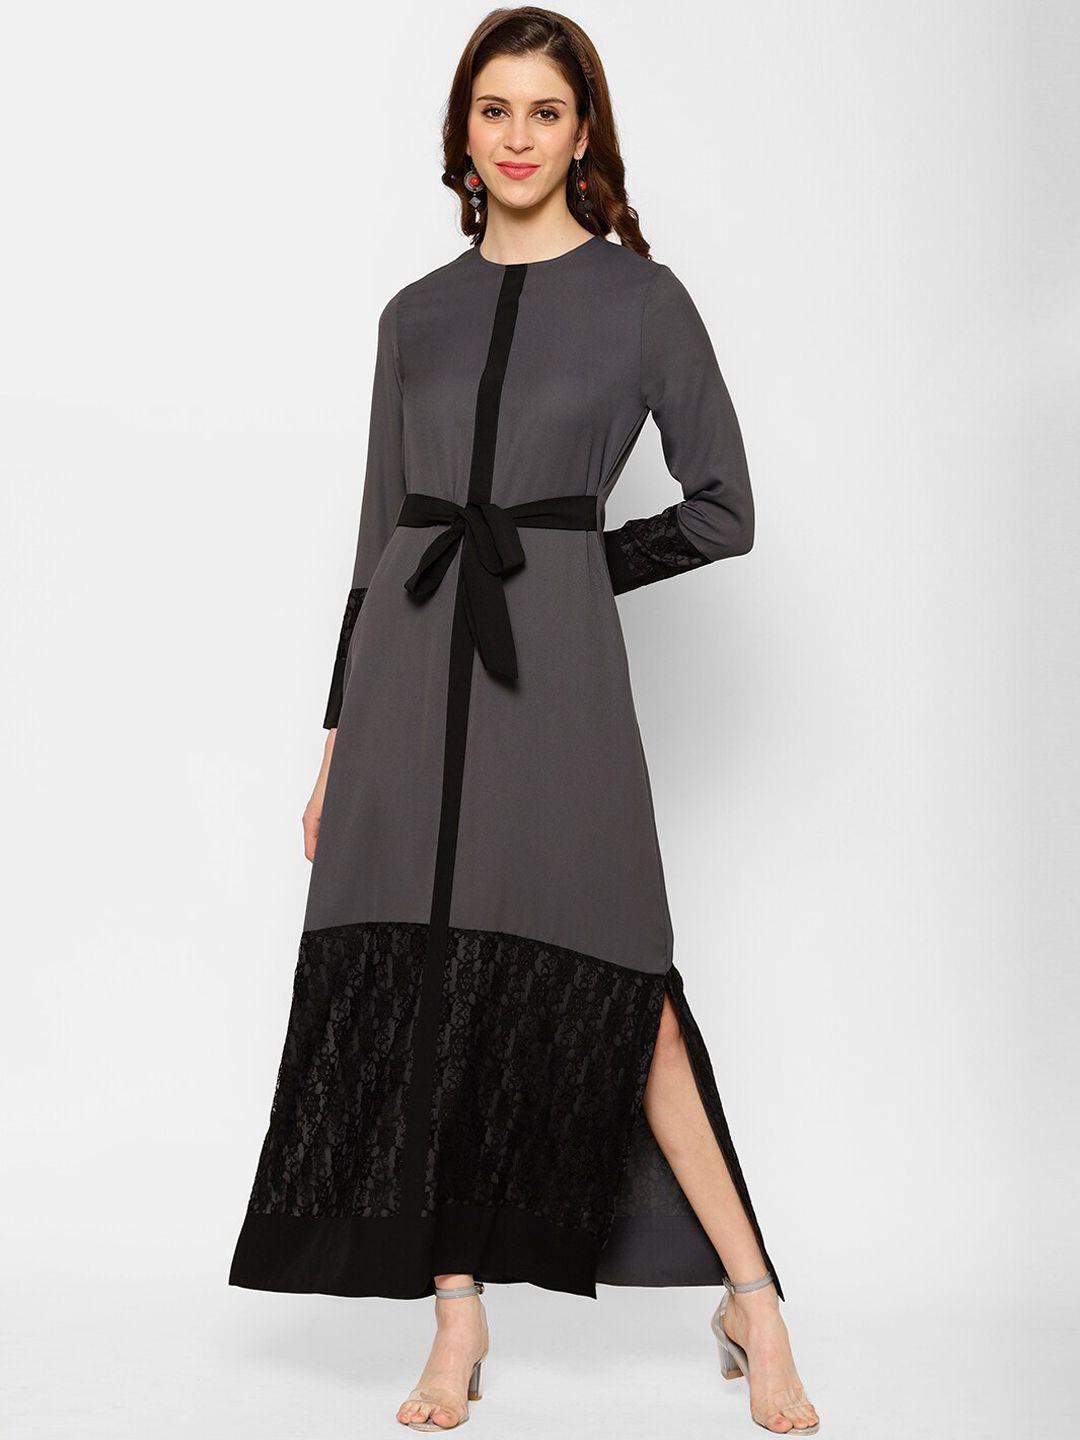 kassually women grey & black colourblocked maxi dress